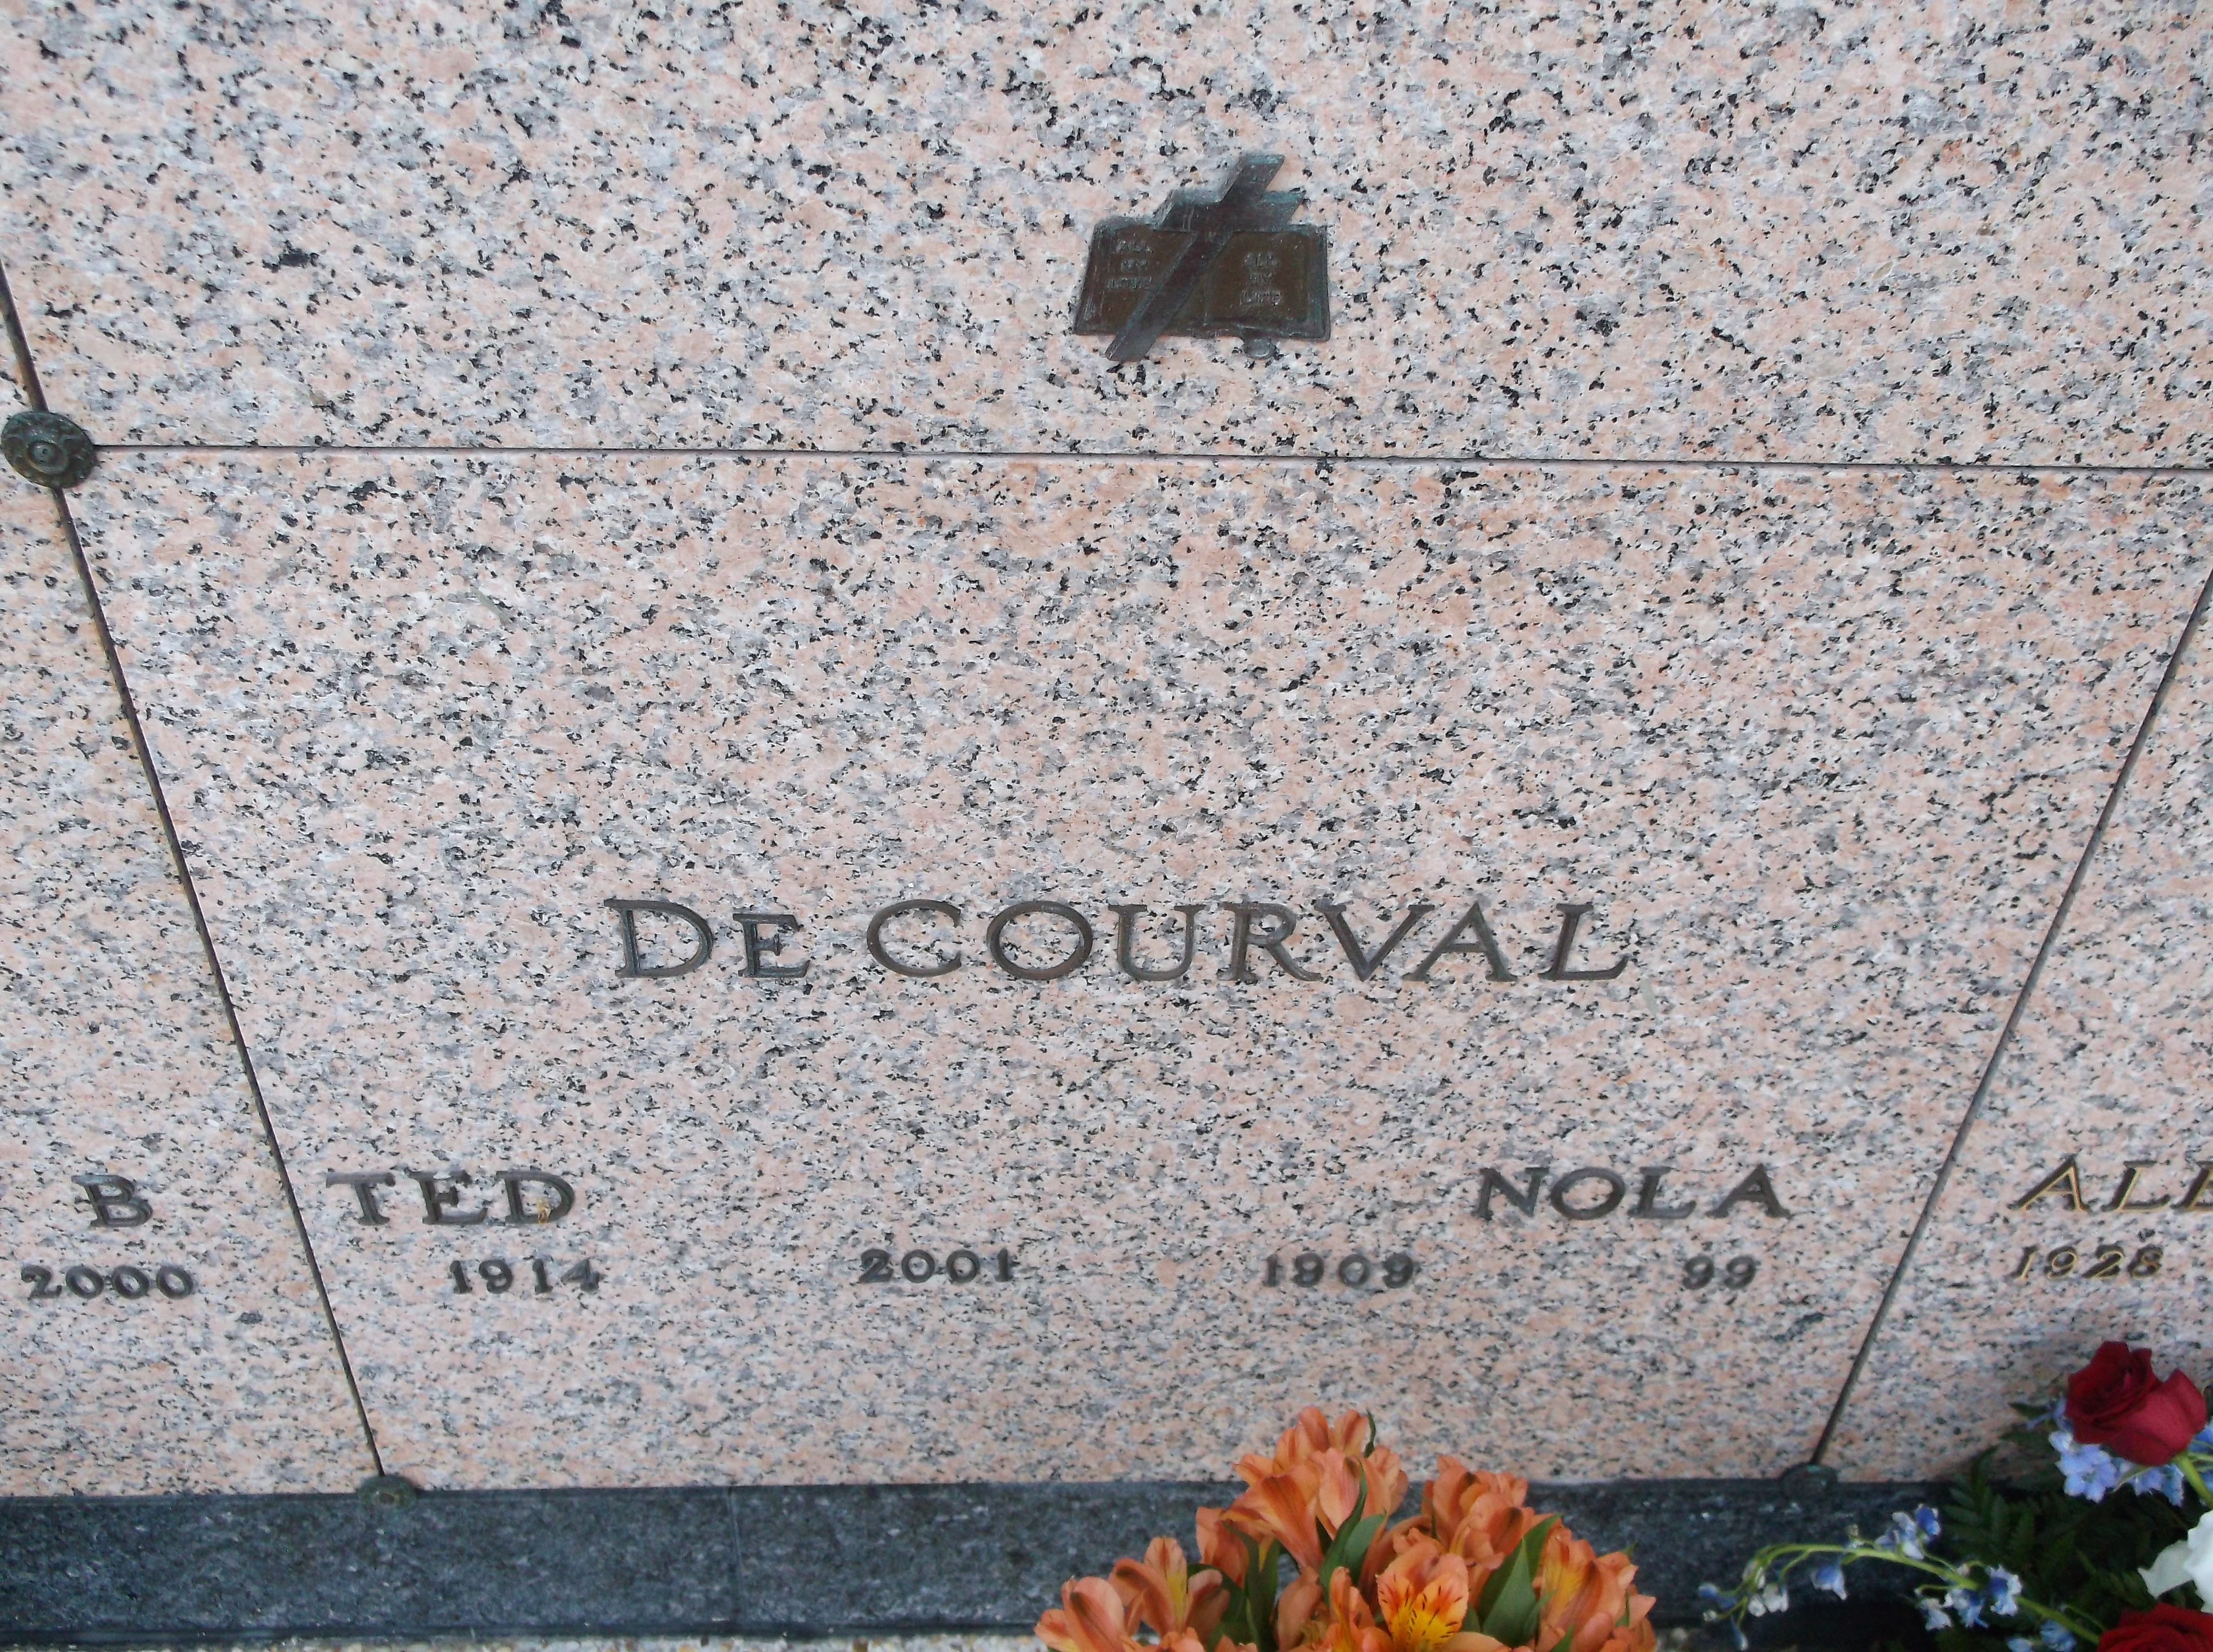 Ted De Courval